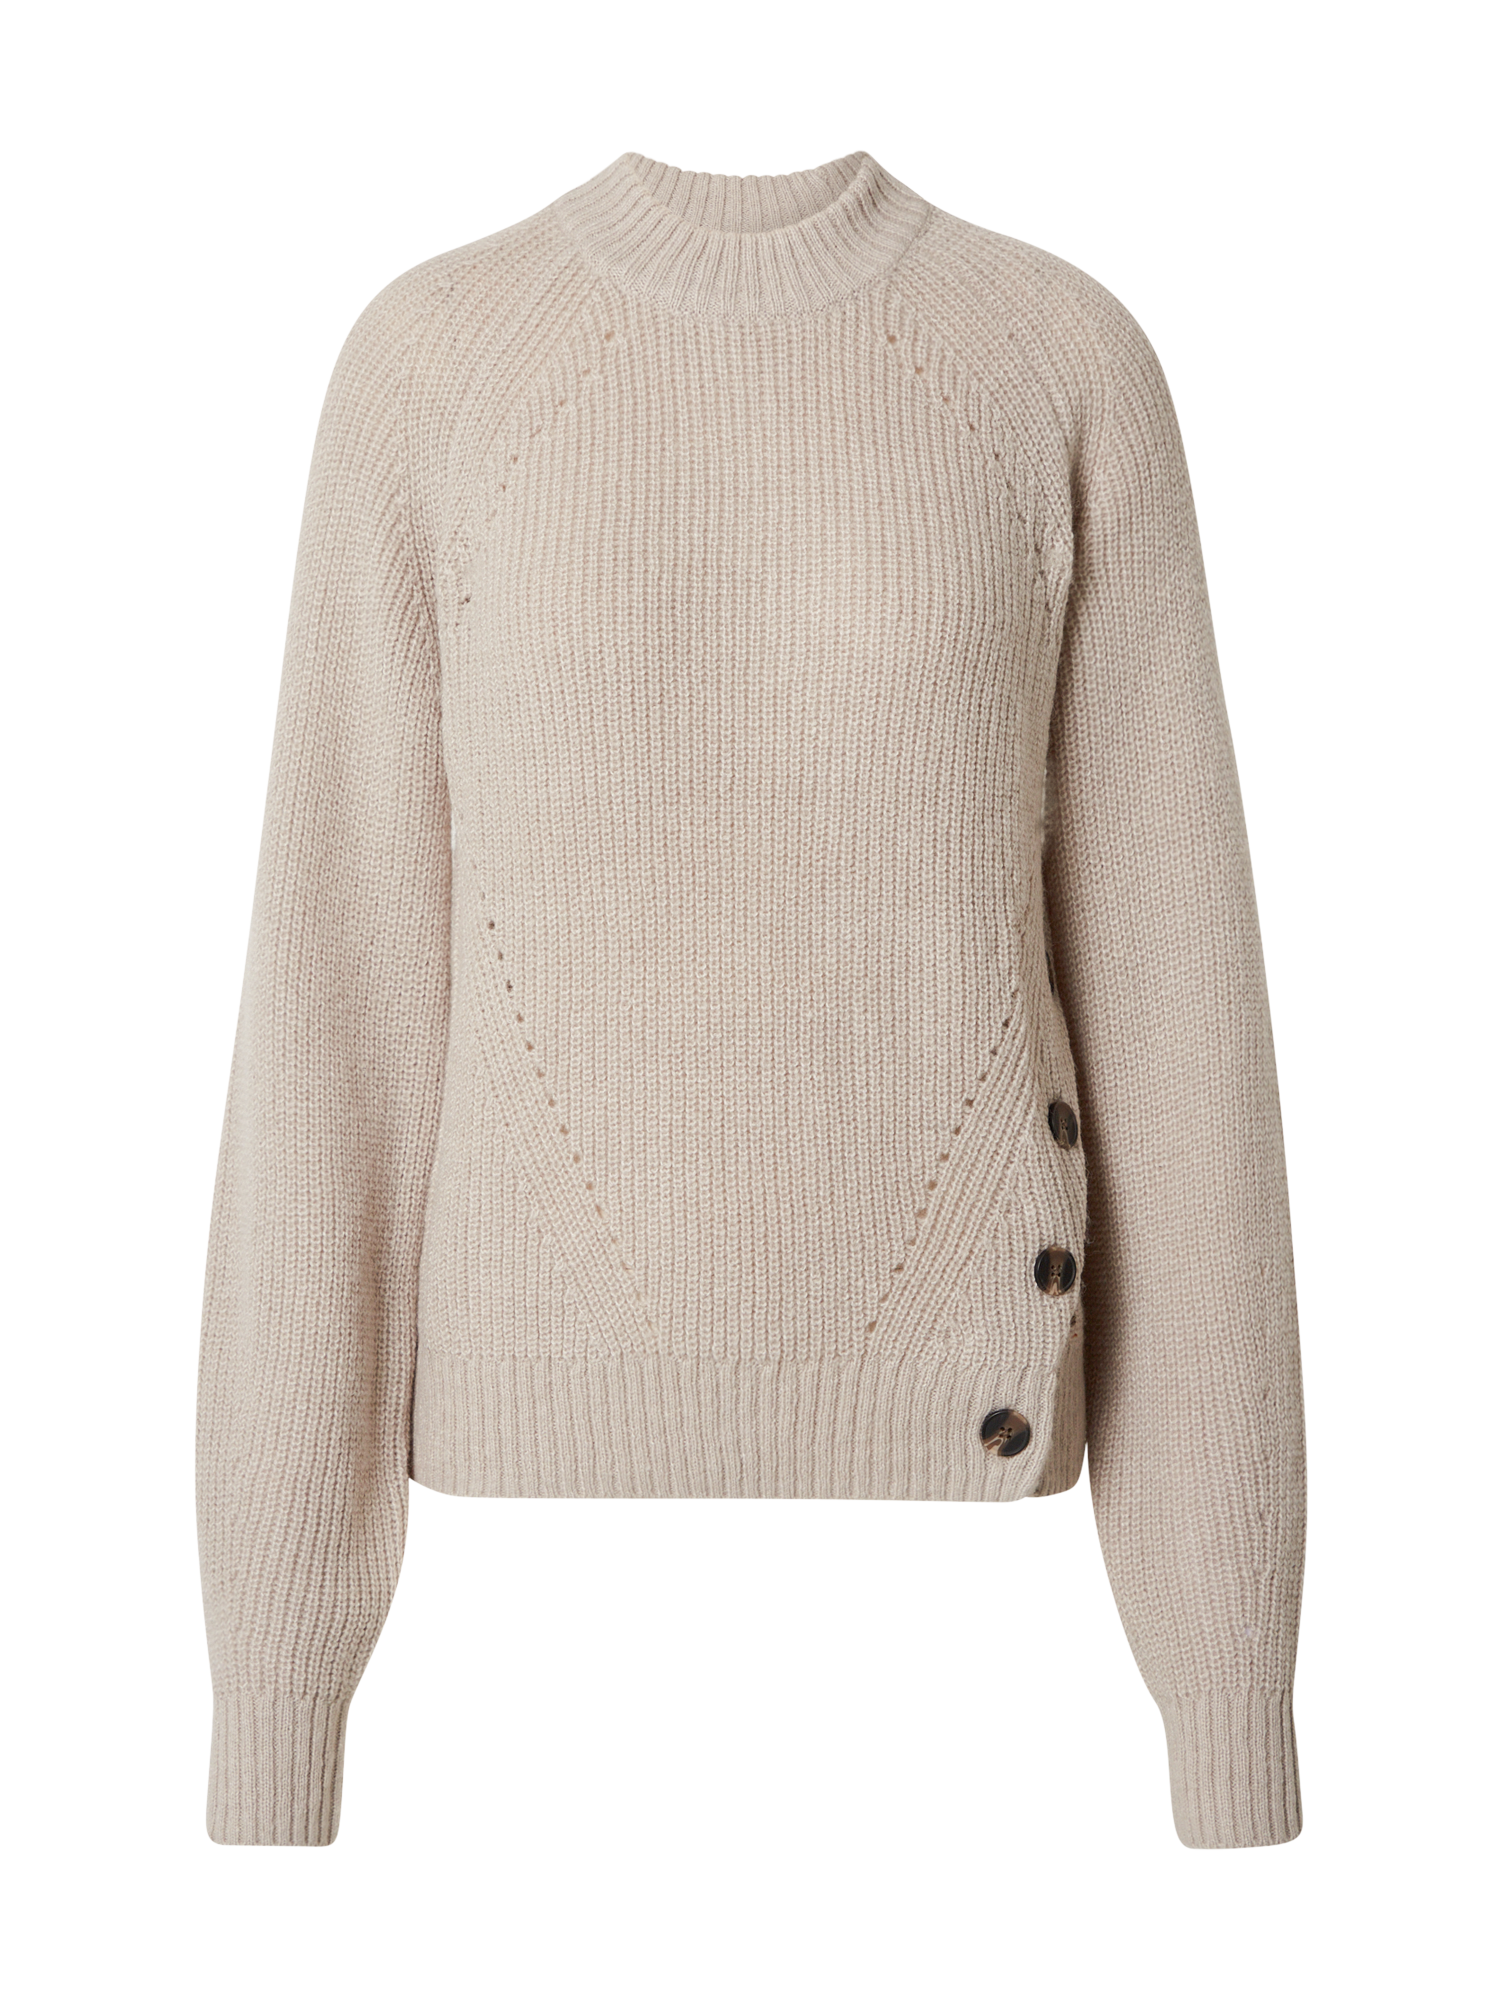 Swetry & dzianina Odzież Pepe Jeans Sweter ORCHID w kolorze Szarobeżowym 